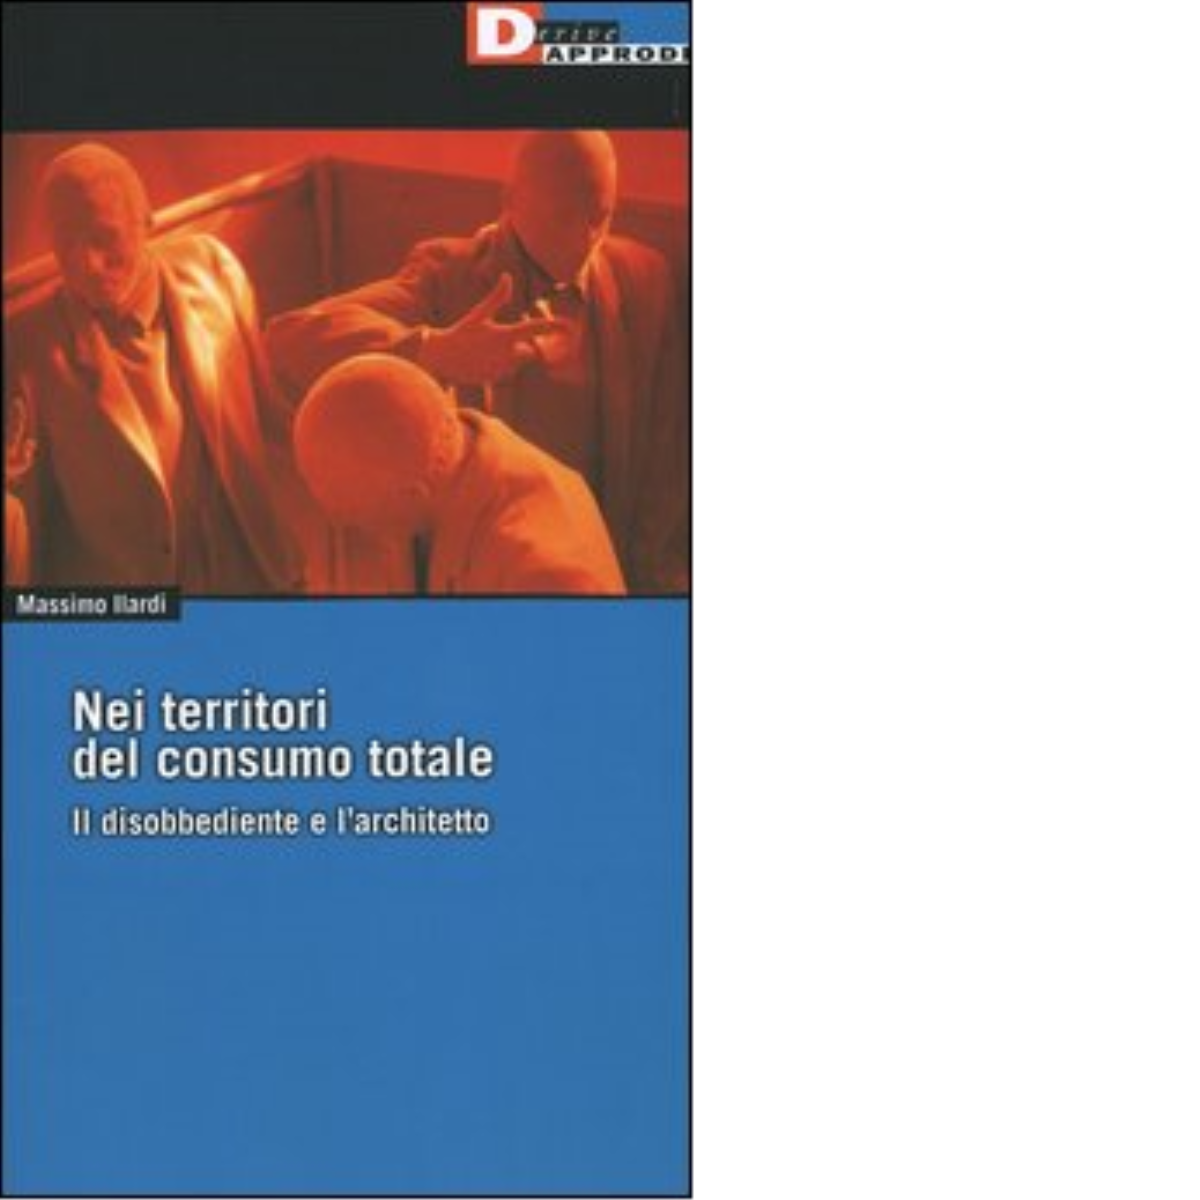 NEI TERRITORI DEL CONSUMO TOTALE. di MASSIMO ILARDI - DeriveApprodi editore,2004 libro usato